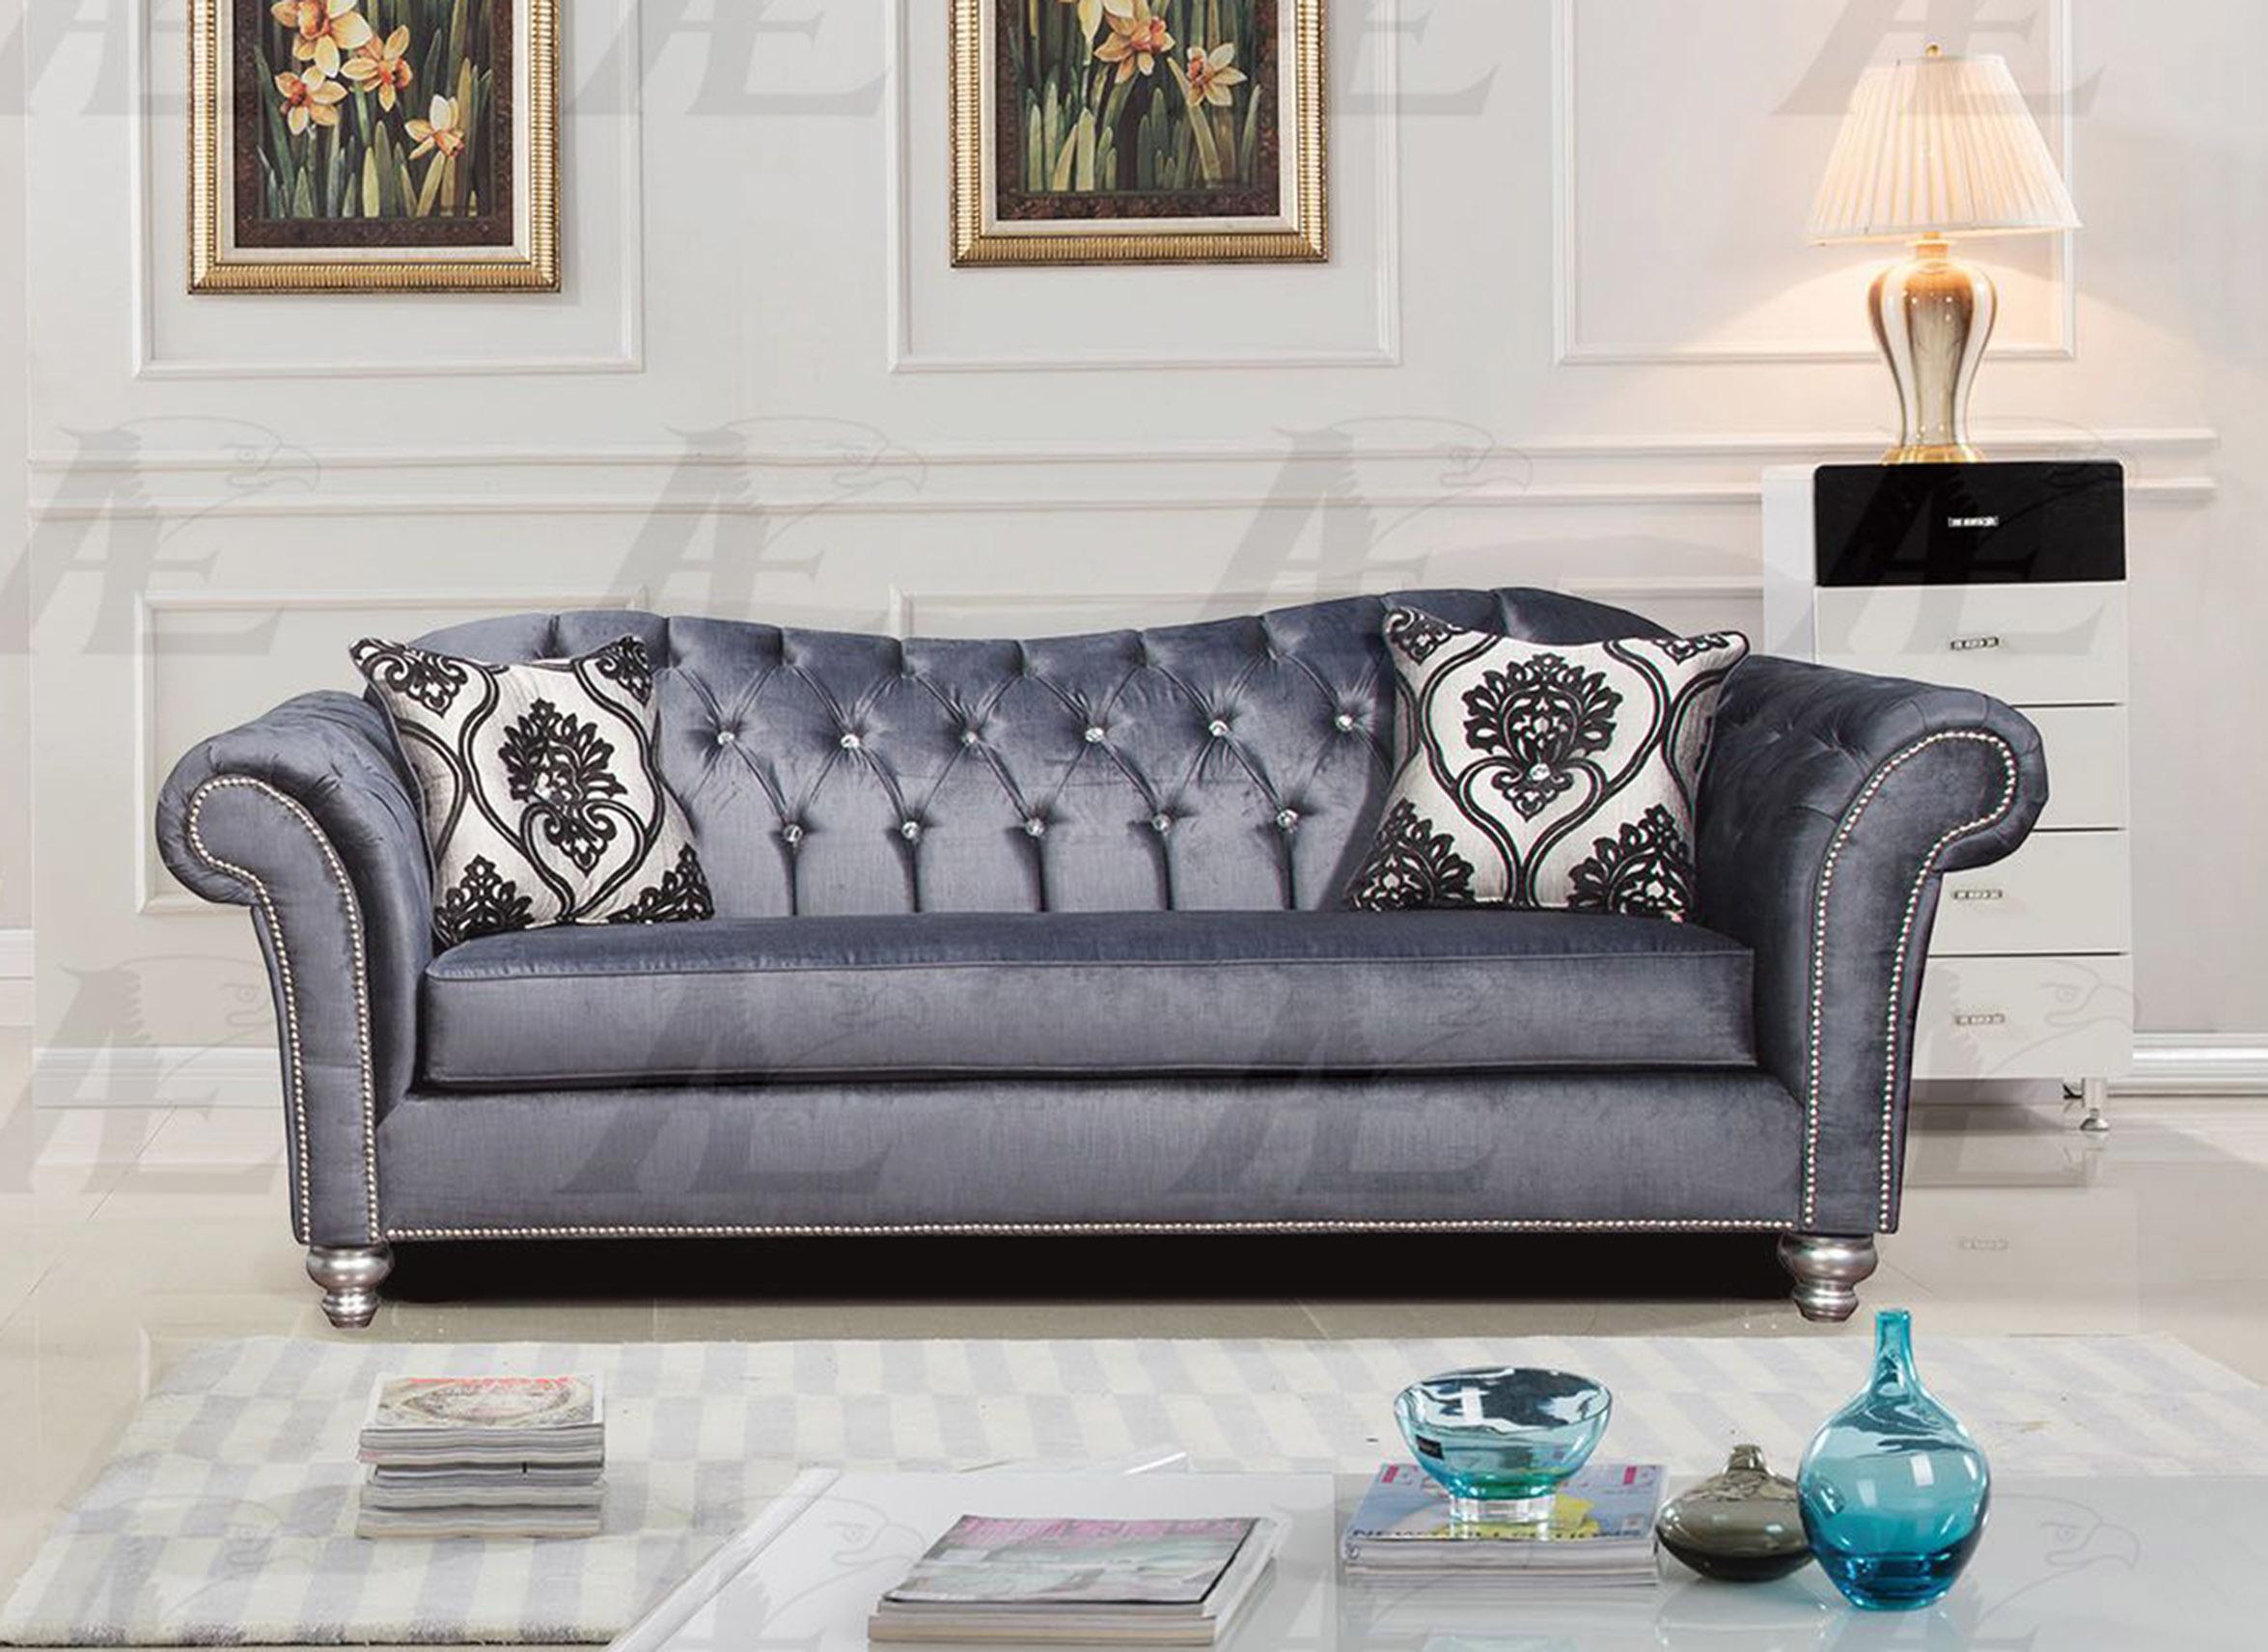 

    
American Eagle Furniture AE2600-GB Greyish Blue Tufted Sofa Fabric Contemporary
